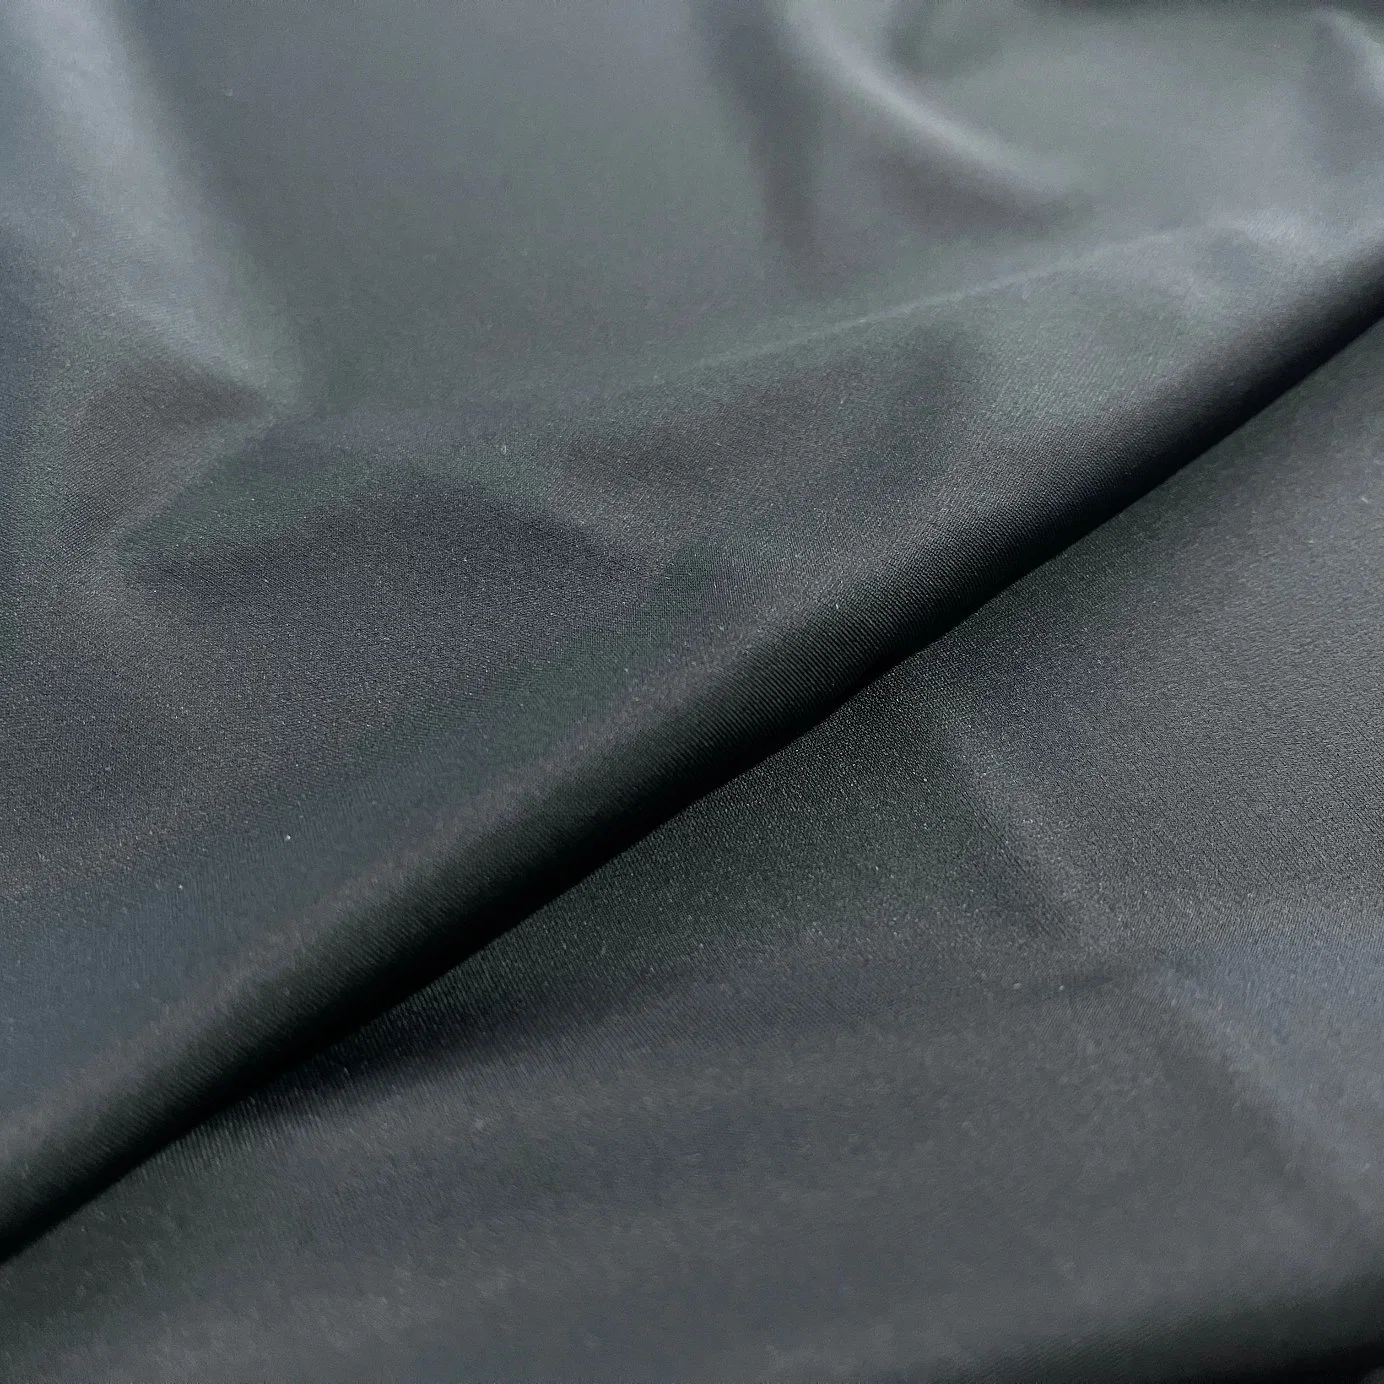 اليوجا ليجس الملابس الداخلية النايلون الإسباندكس قماش محبوك مع الشعور بالكولول 0.15 للحراقةِ